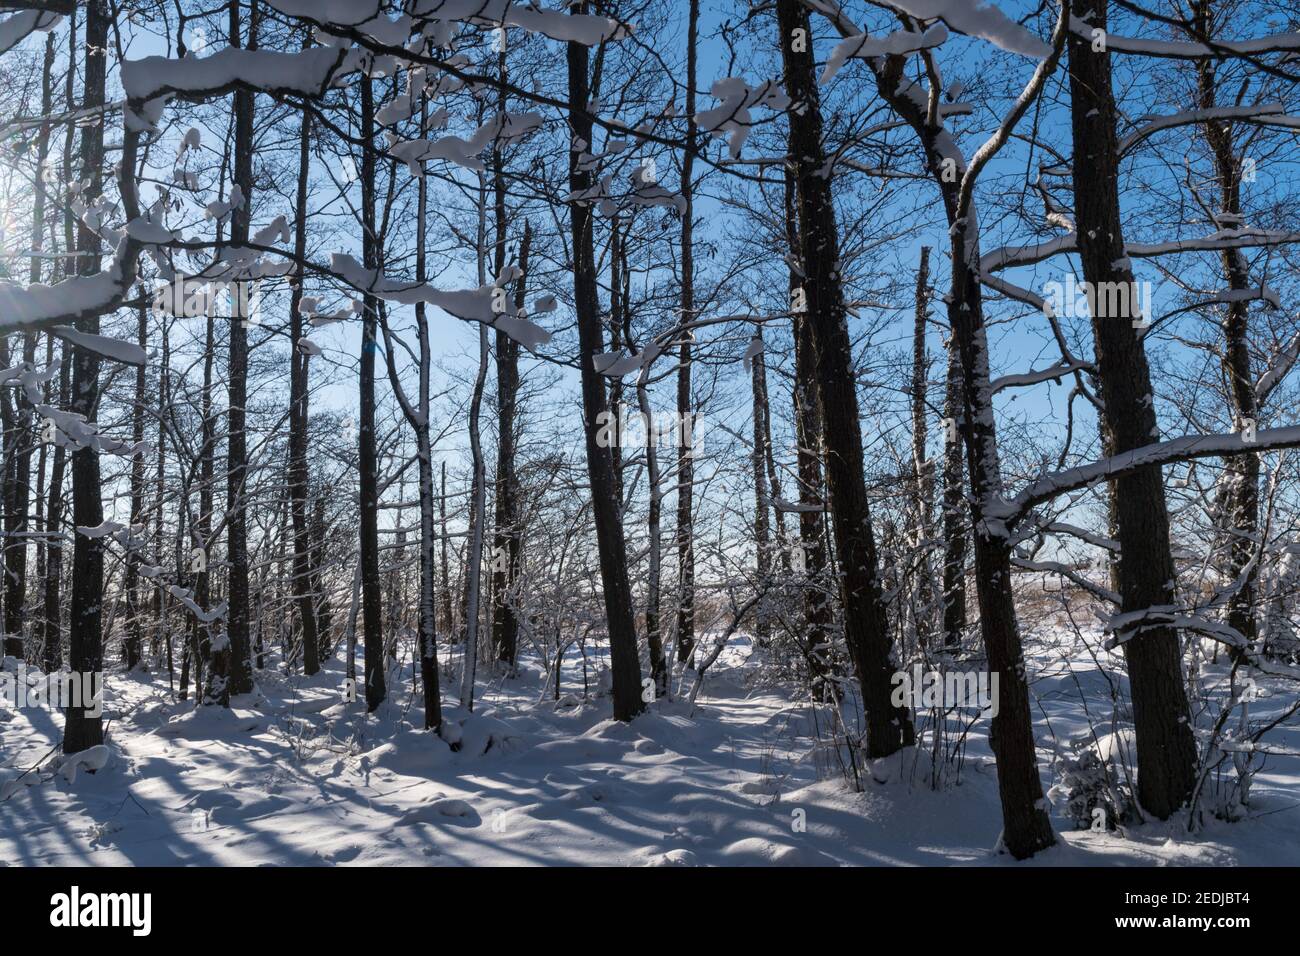 Snowy Alder tree forest in winter season Stock Photo